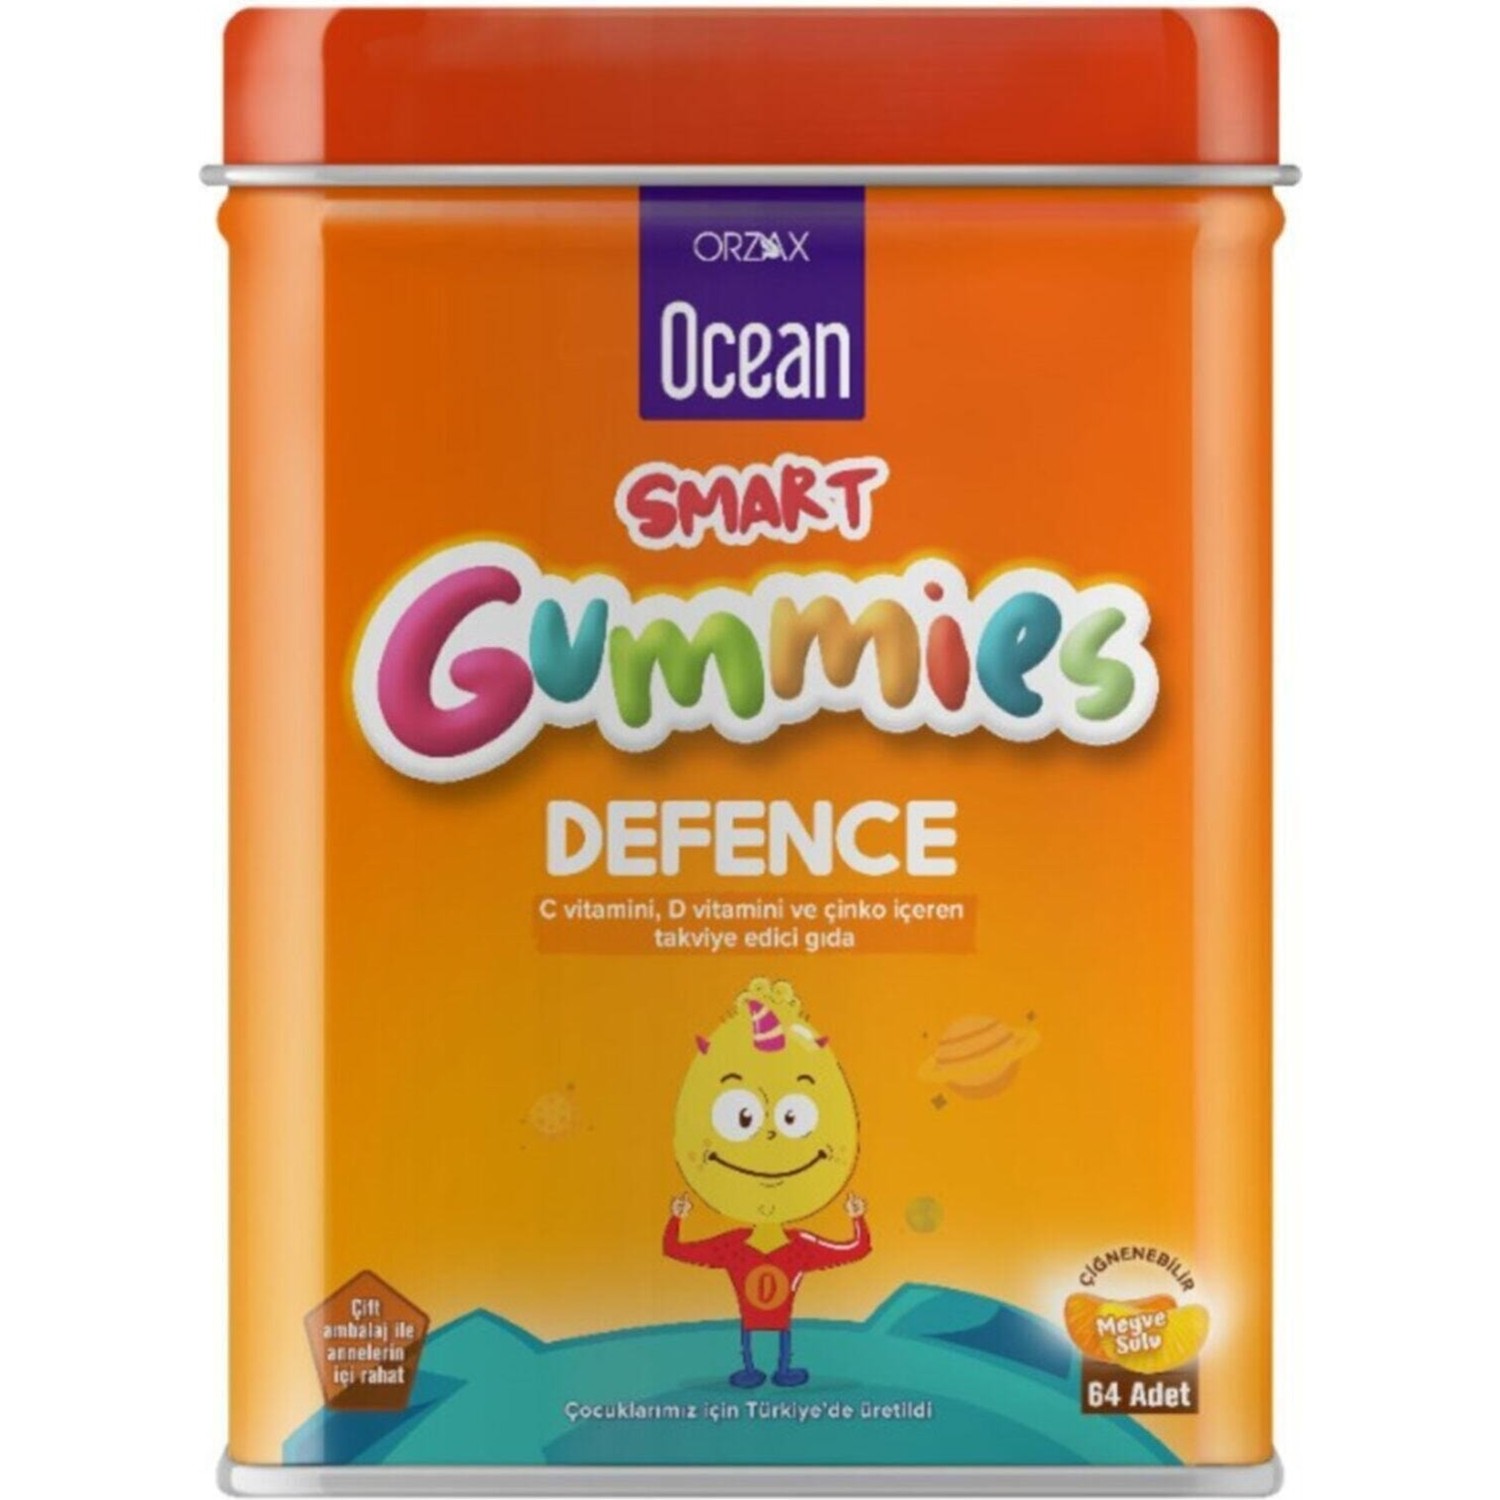 биологически активная добавка solgar u cubes vitamin c gummies 90 шт Пищевая добавка Ocean Smart Gummies Defense Cigneme, 64 таблетки